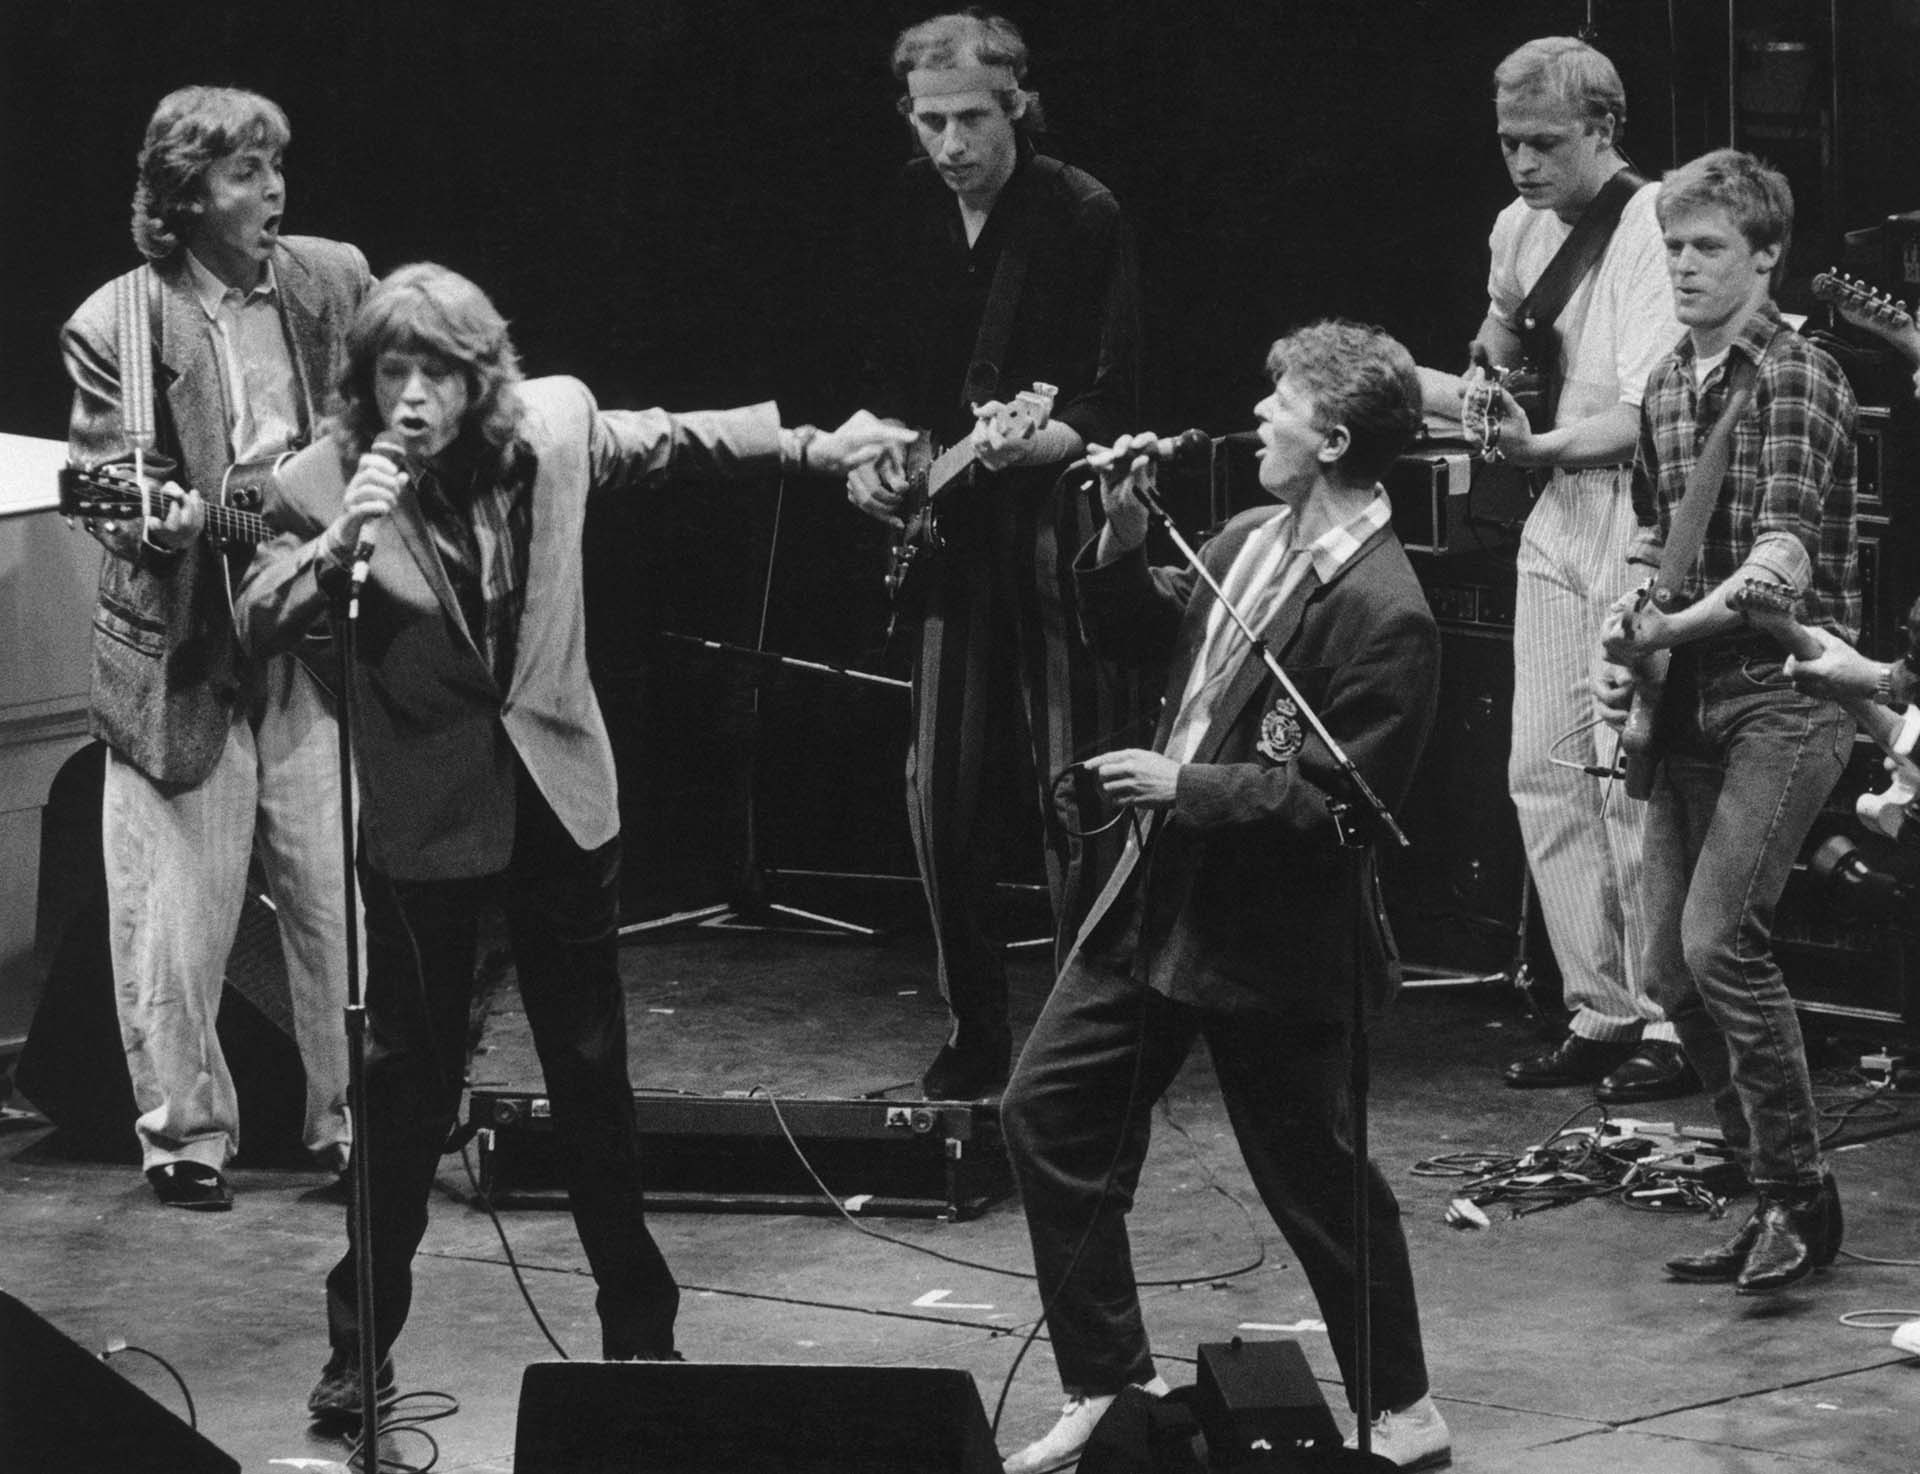 Mick Jagger y David Bowie cantan junto a una banda de estrellas entre las que aparece Paul McCartney, el primero de izquierda, junto a Mark Knopfler, Mark King y Brian Adams en Wembley, el 23 de junio de 1986 (Photo by Dave Hogan/Hulton Archive/Getty Images)